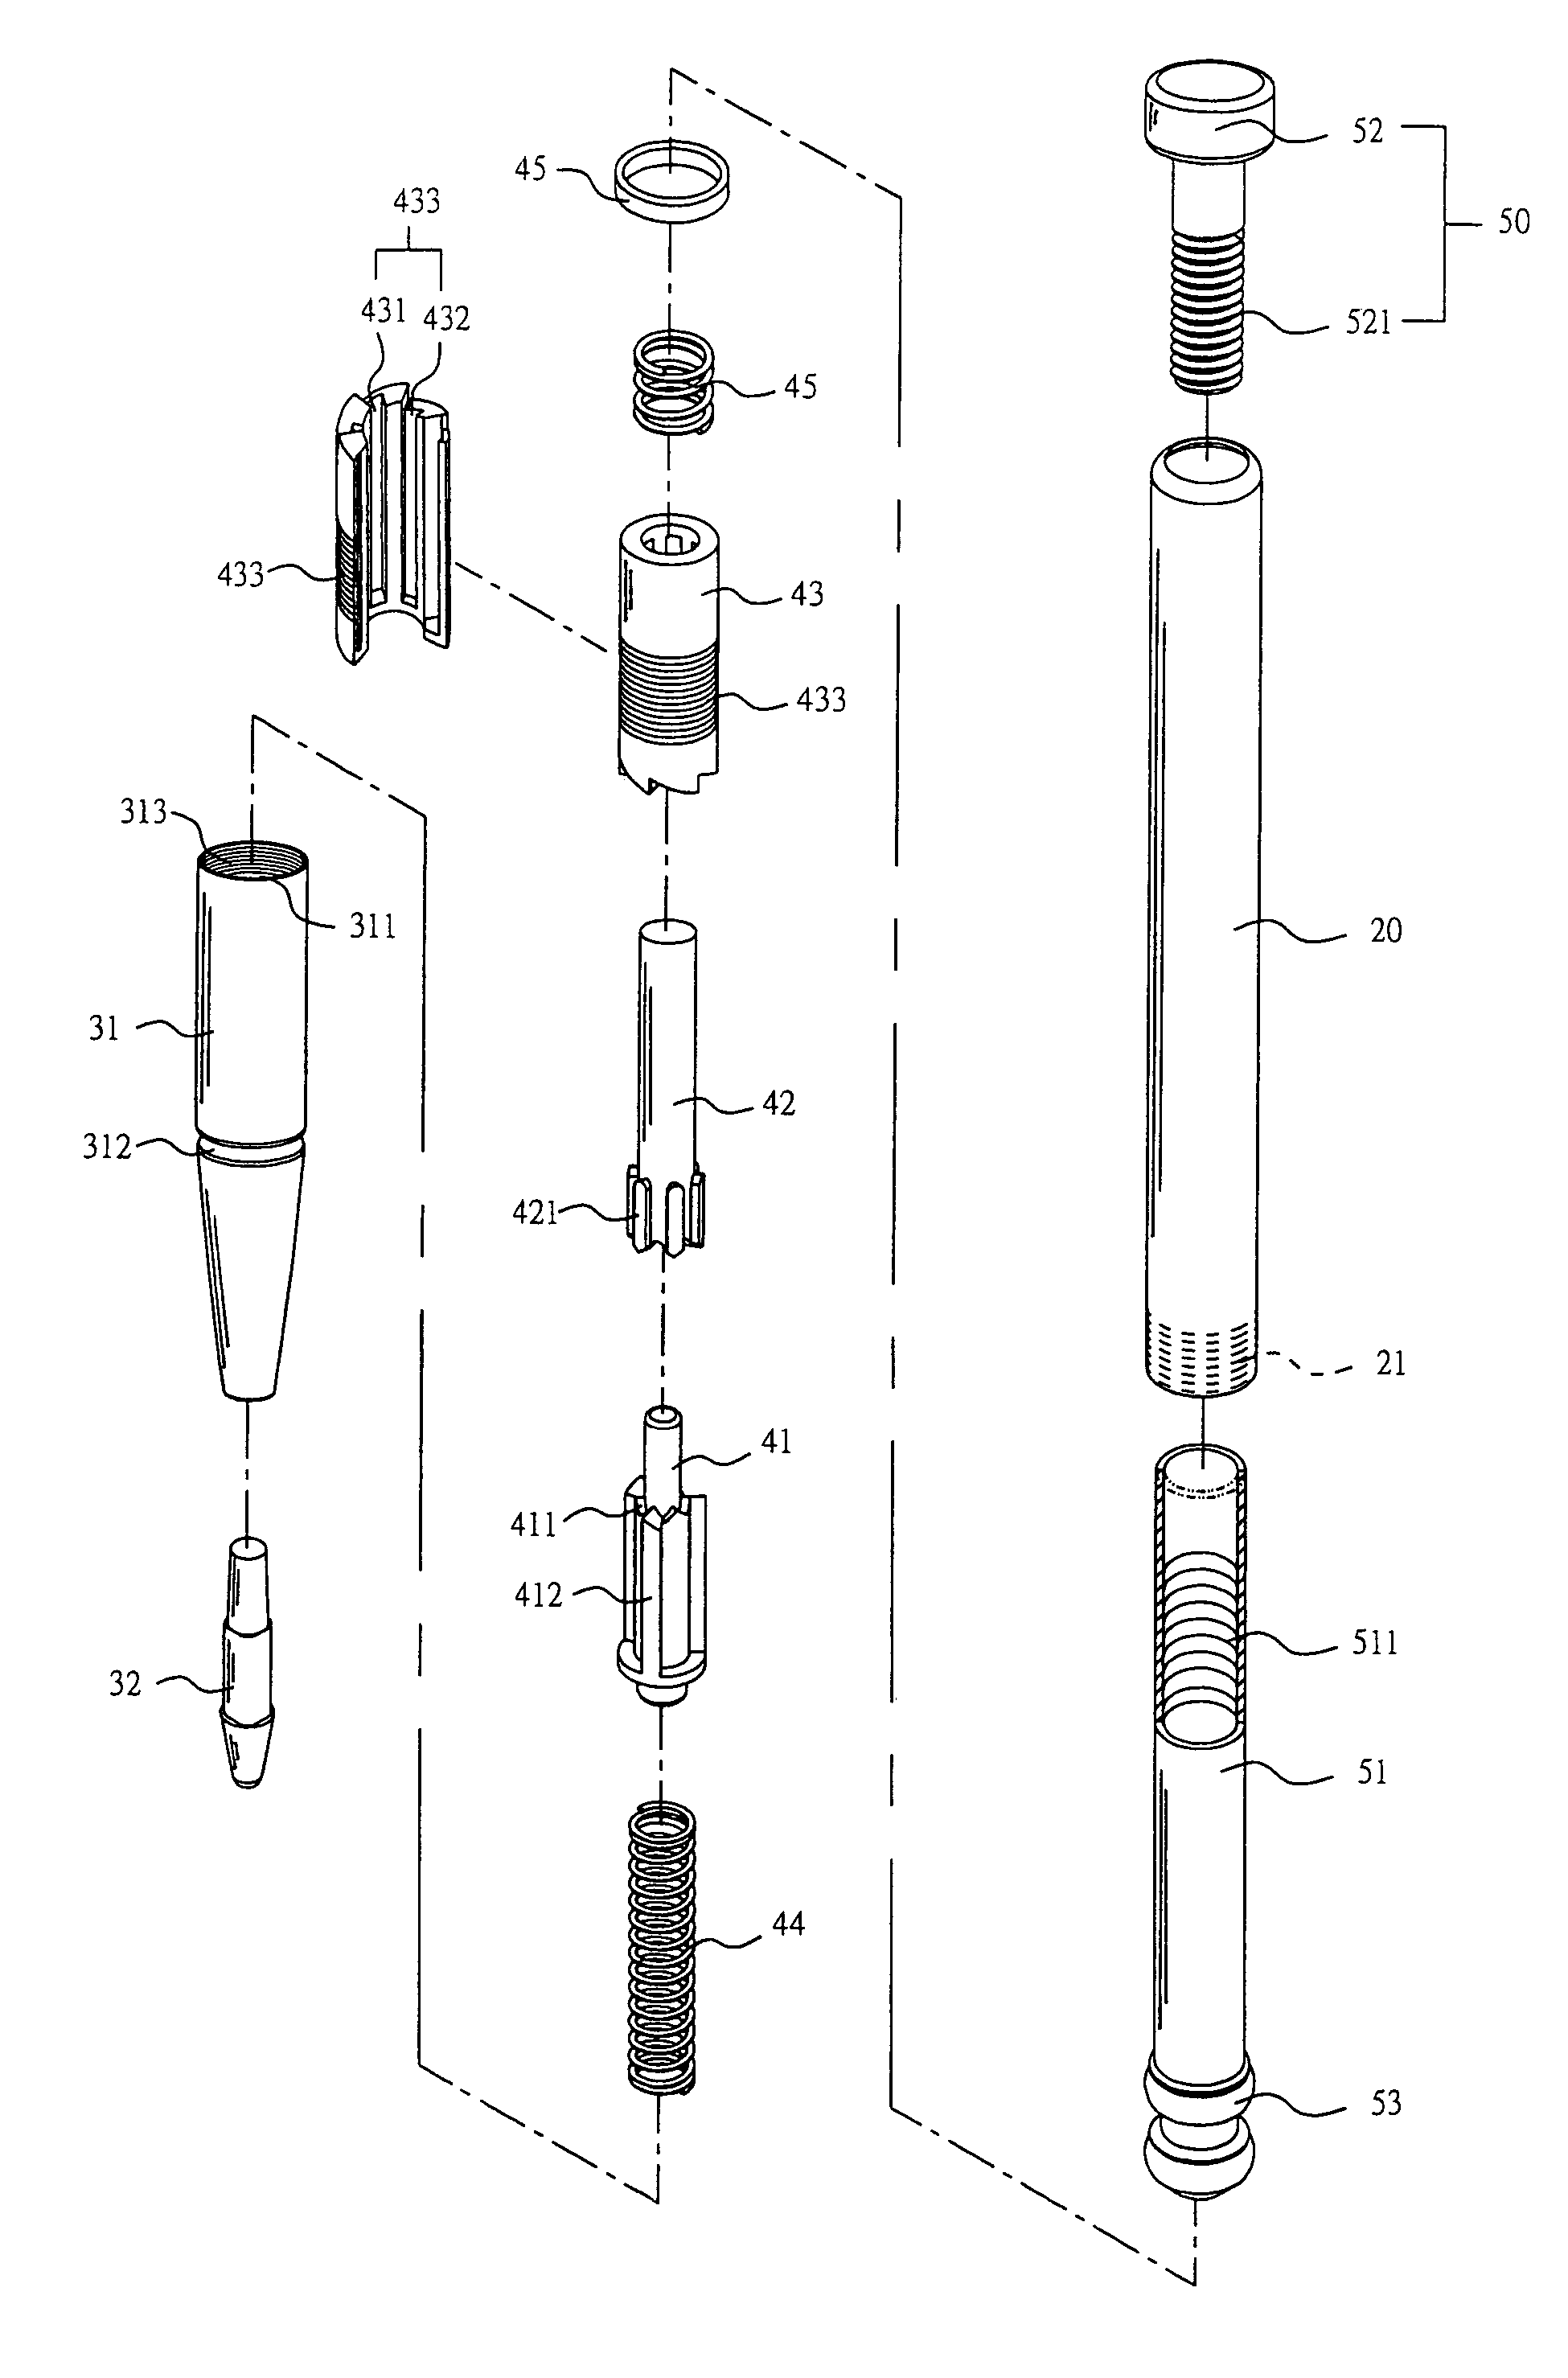 Retraction mechanism of light pen